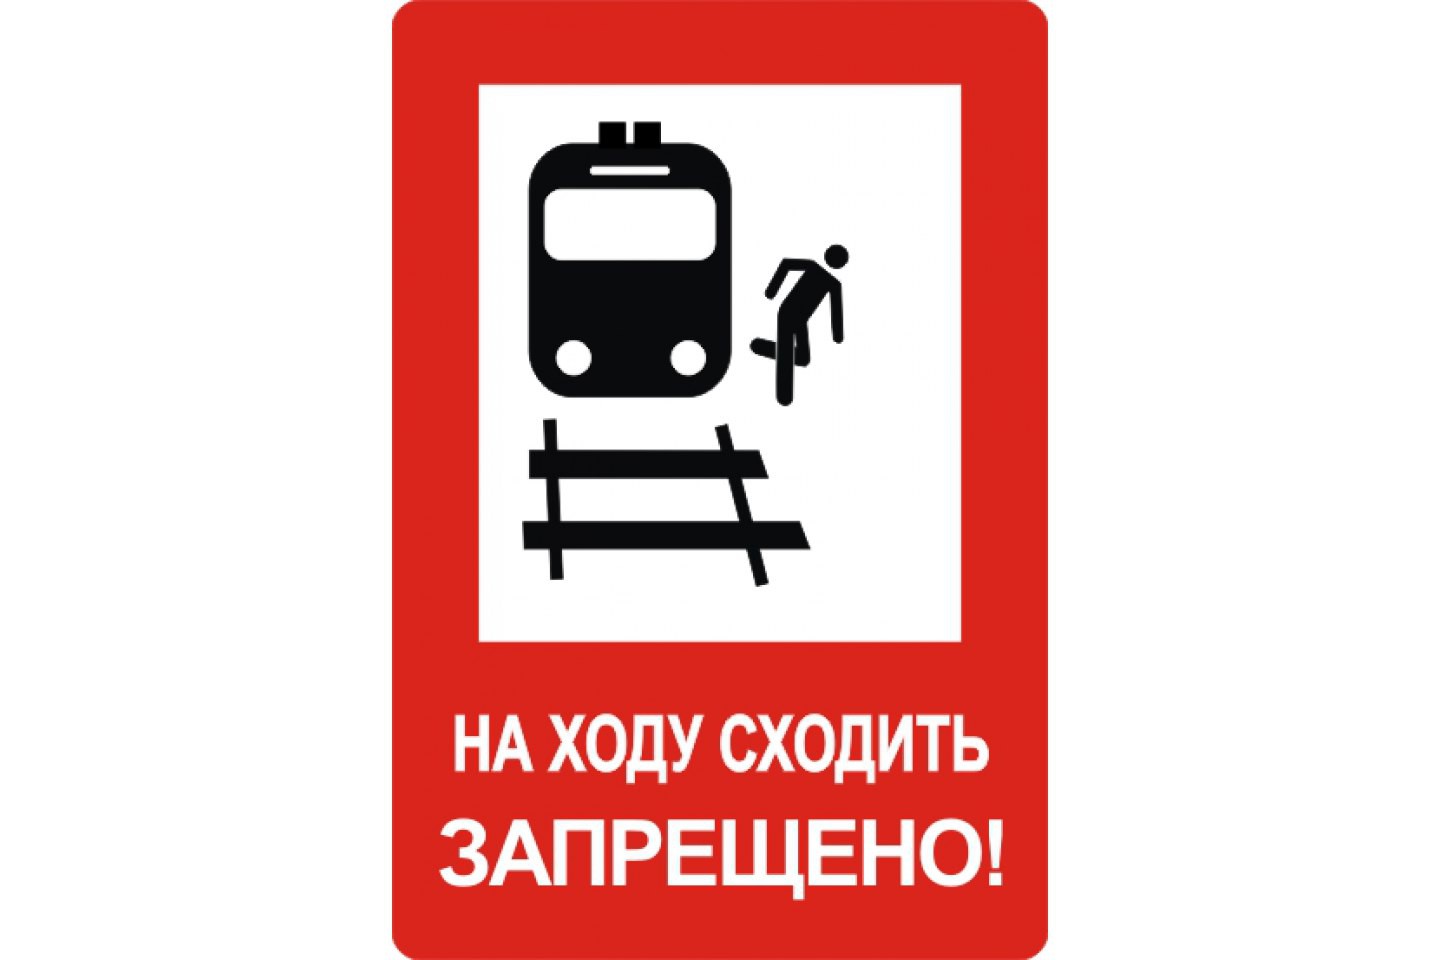 На железной дороге запрещено. Железнодорожные знаки. Железнодорожные знаки безопасности. Знаки по безопасности на железной дороге. Железнодорожные запрещающие знаки.